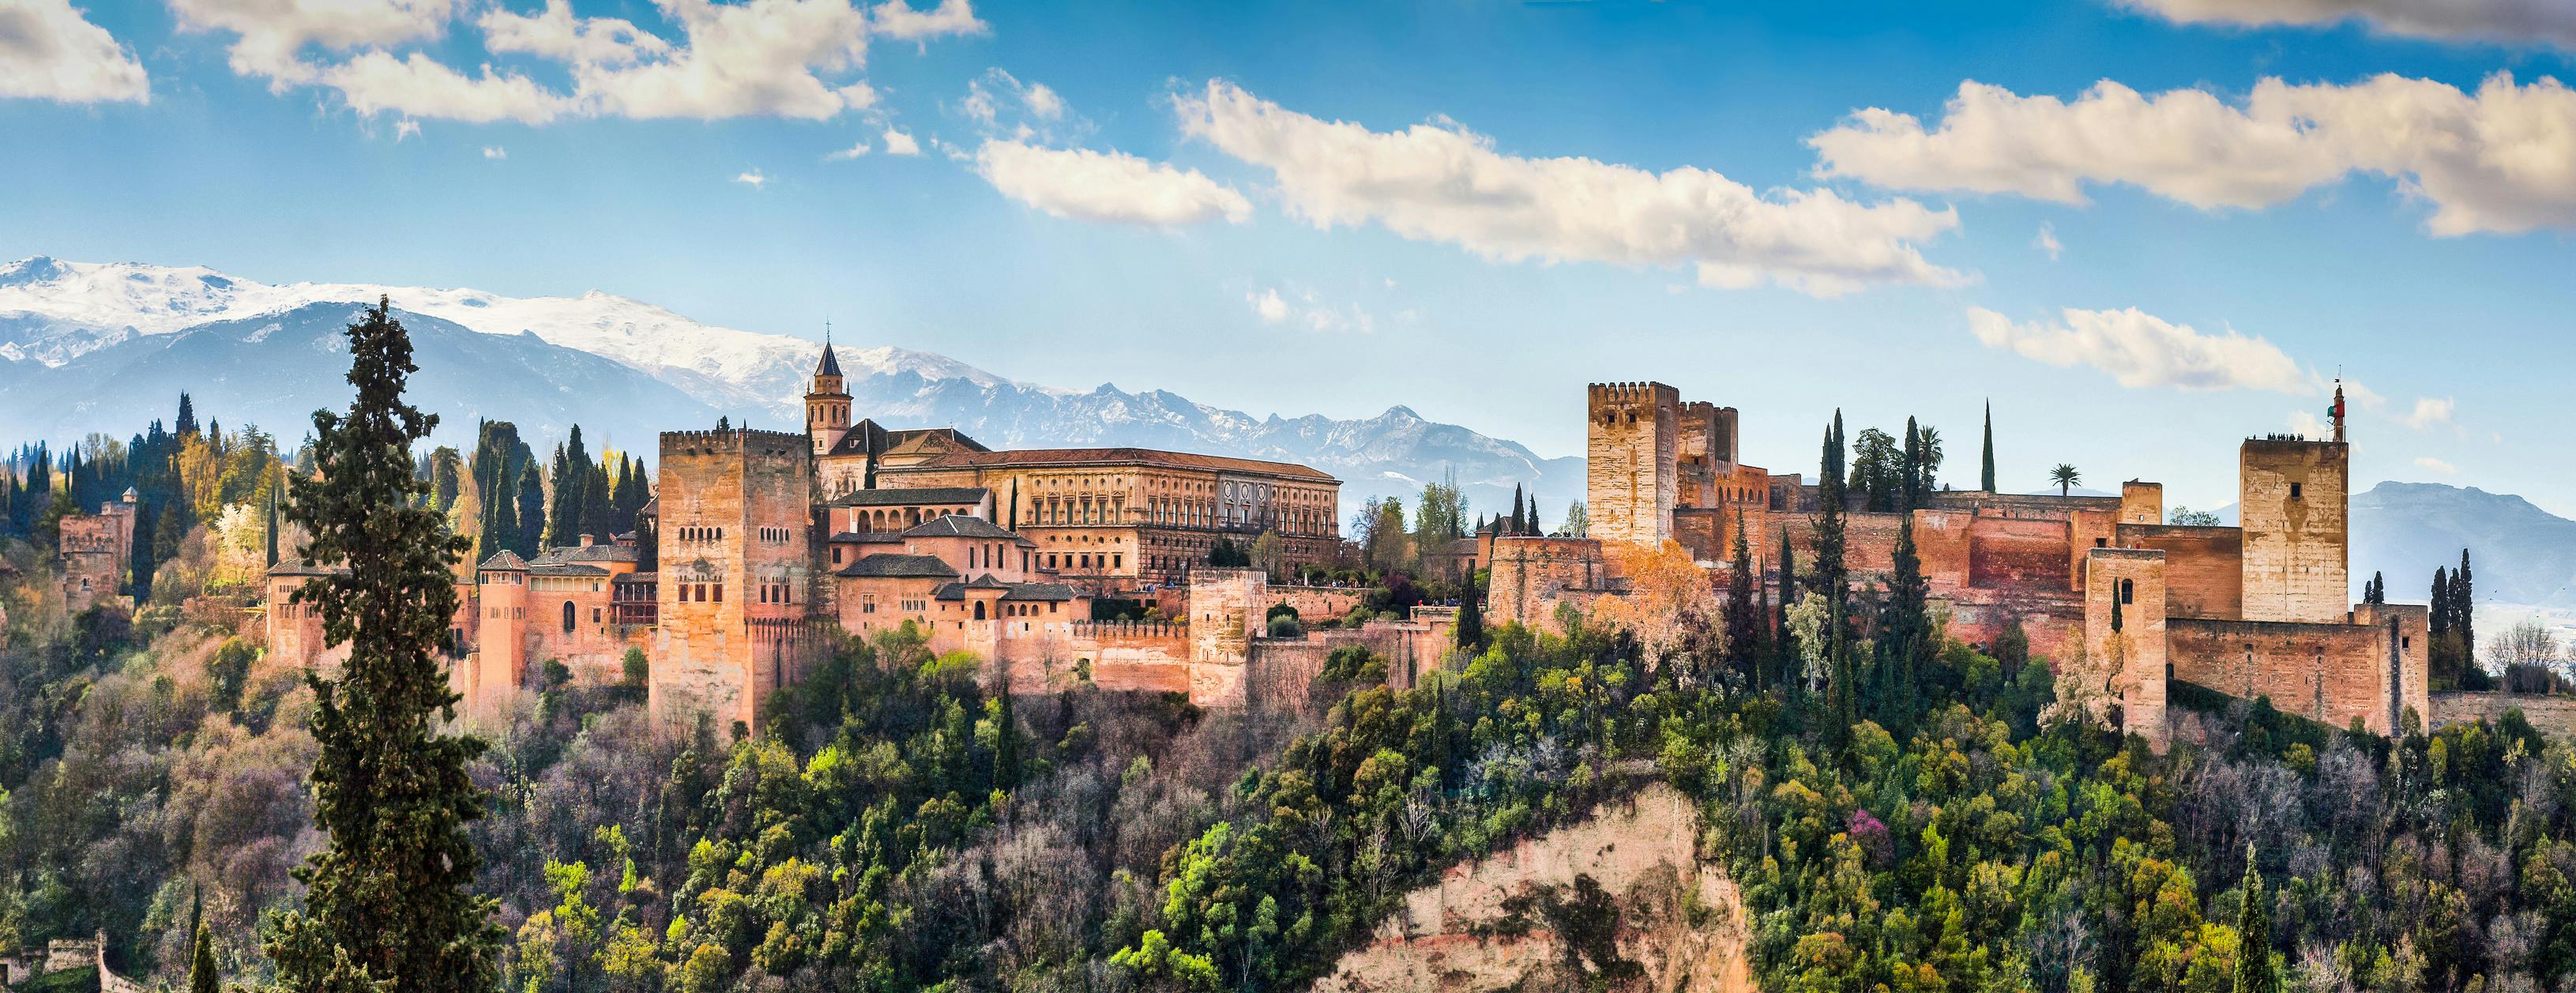 Tour virtuale dell'Alhambra da casa